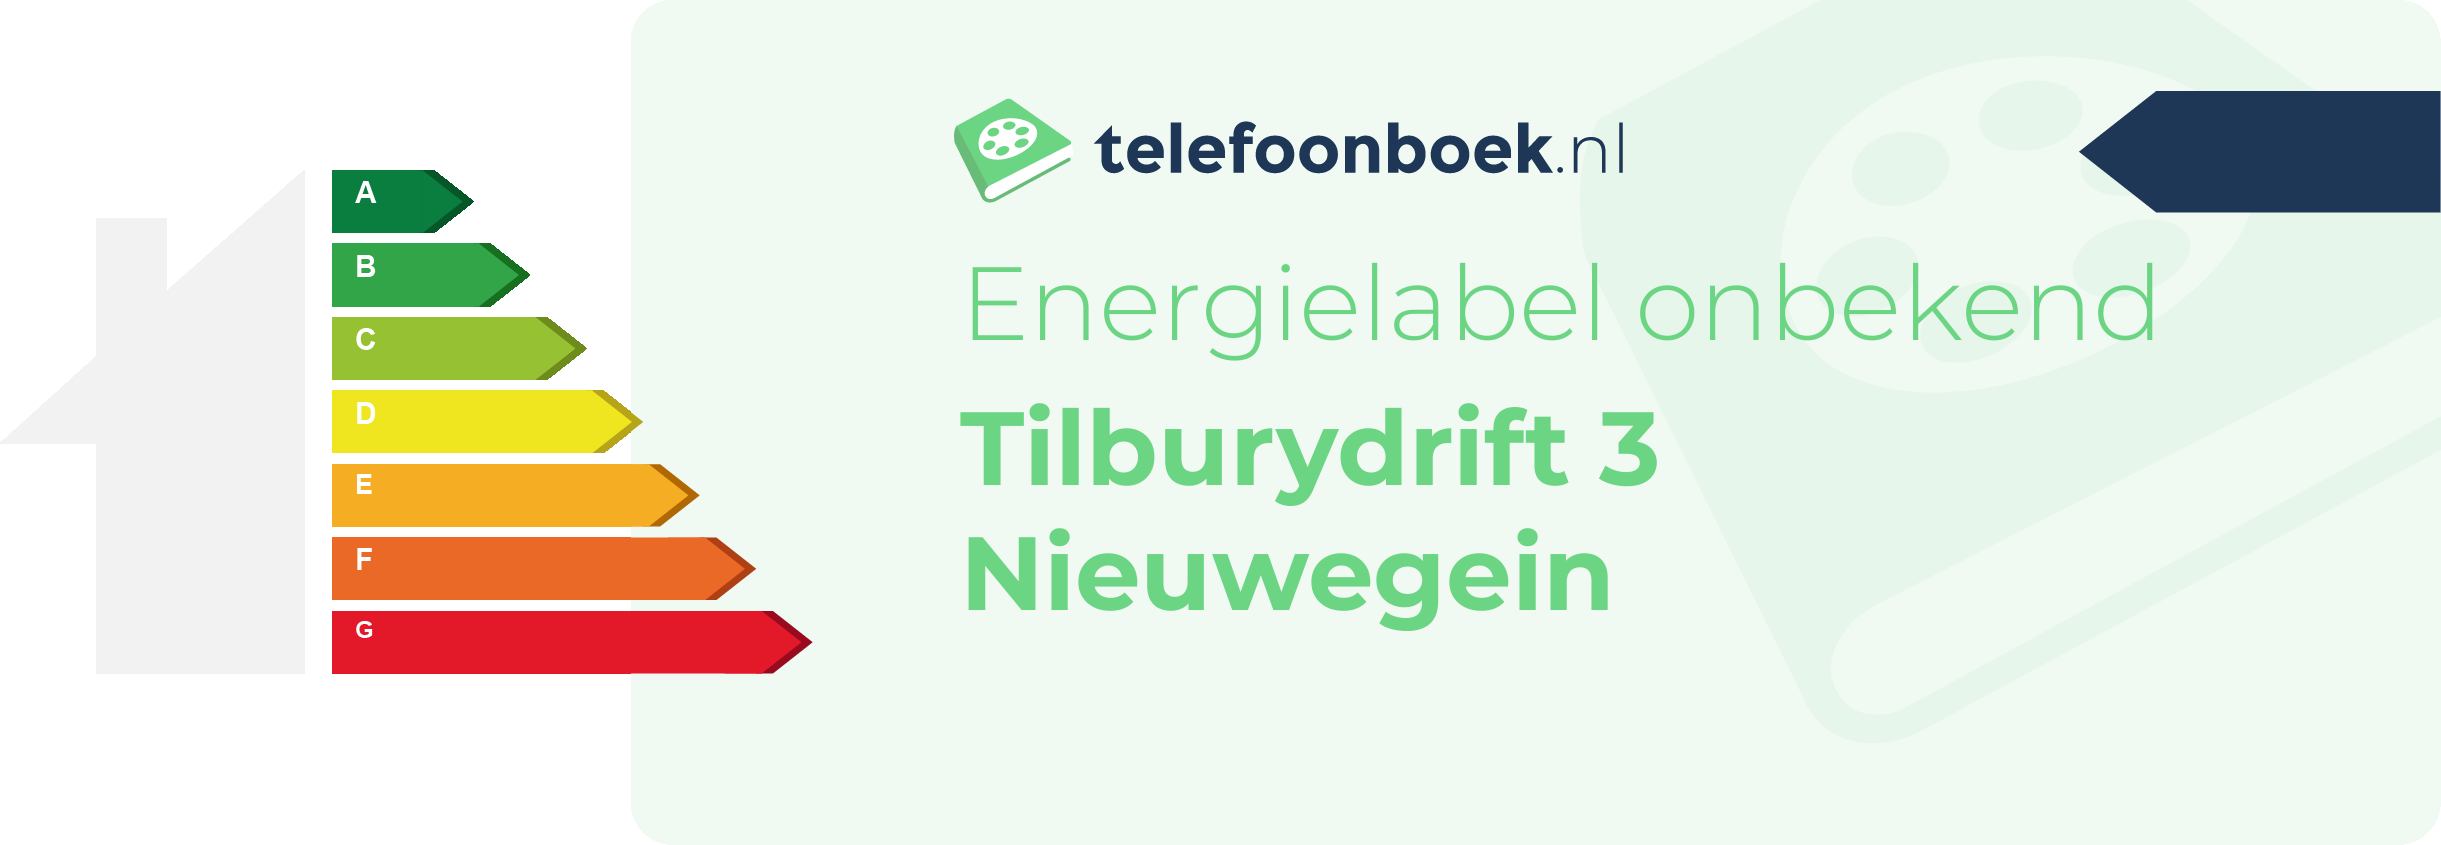 Energielabel Tilburydrift 3 Nieuwegein